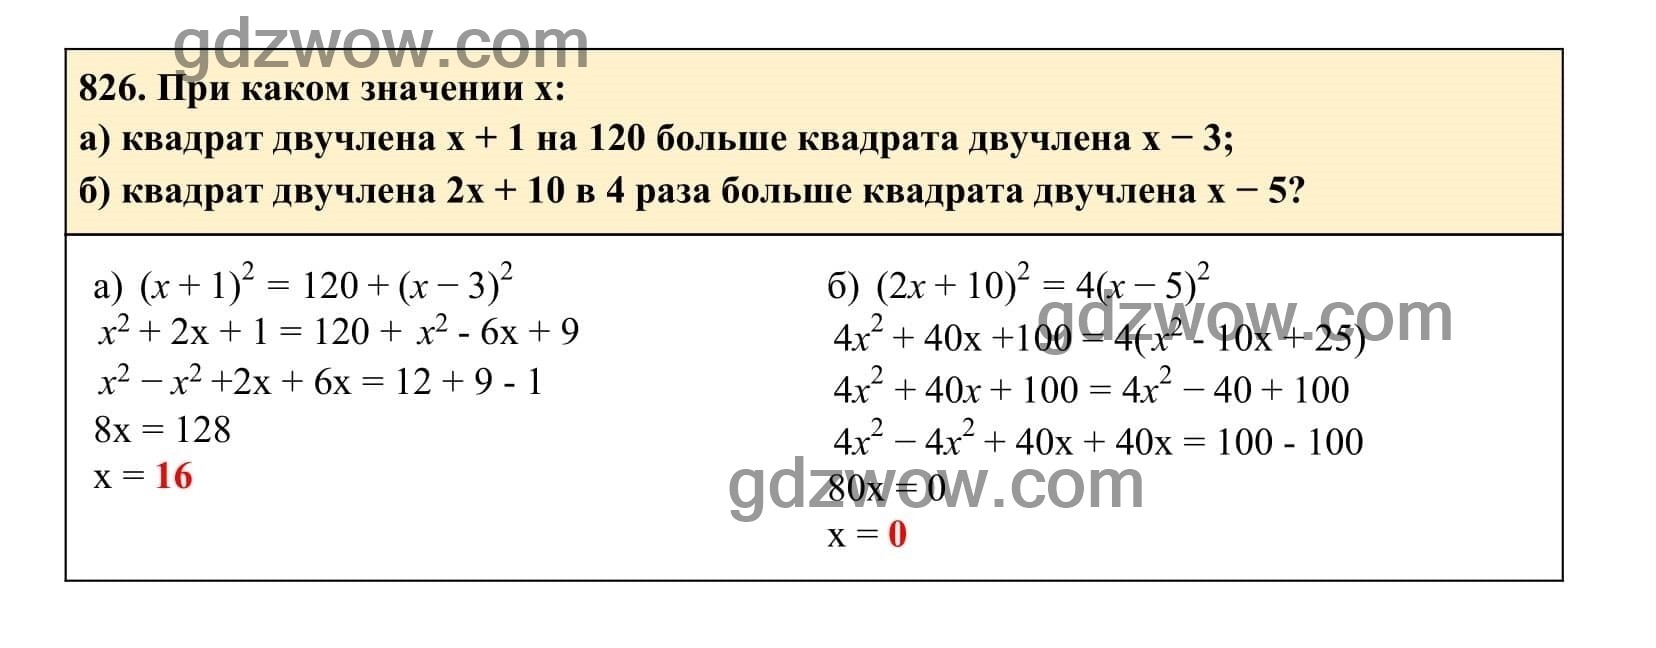 Упражнение 826 - ГДЗ по Алгебре 7 класс Учебник Макарычев (решебник) - GDZwow